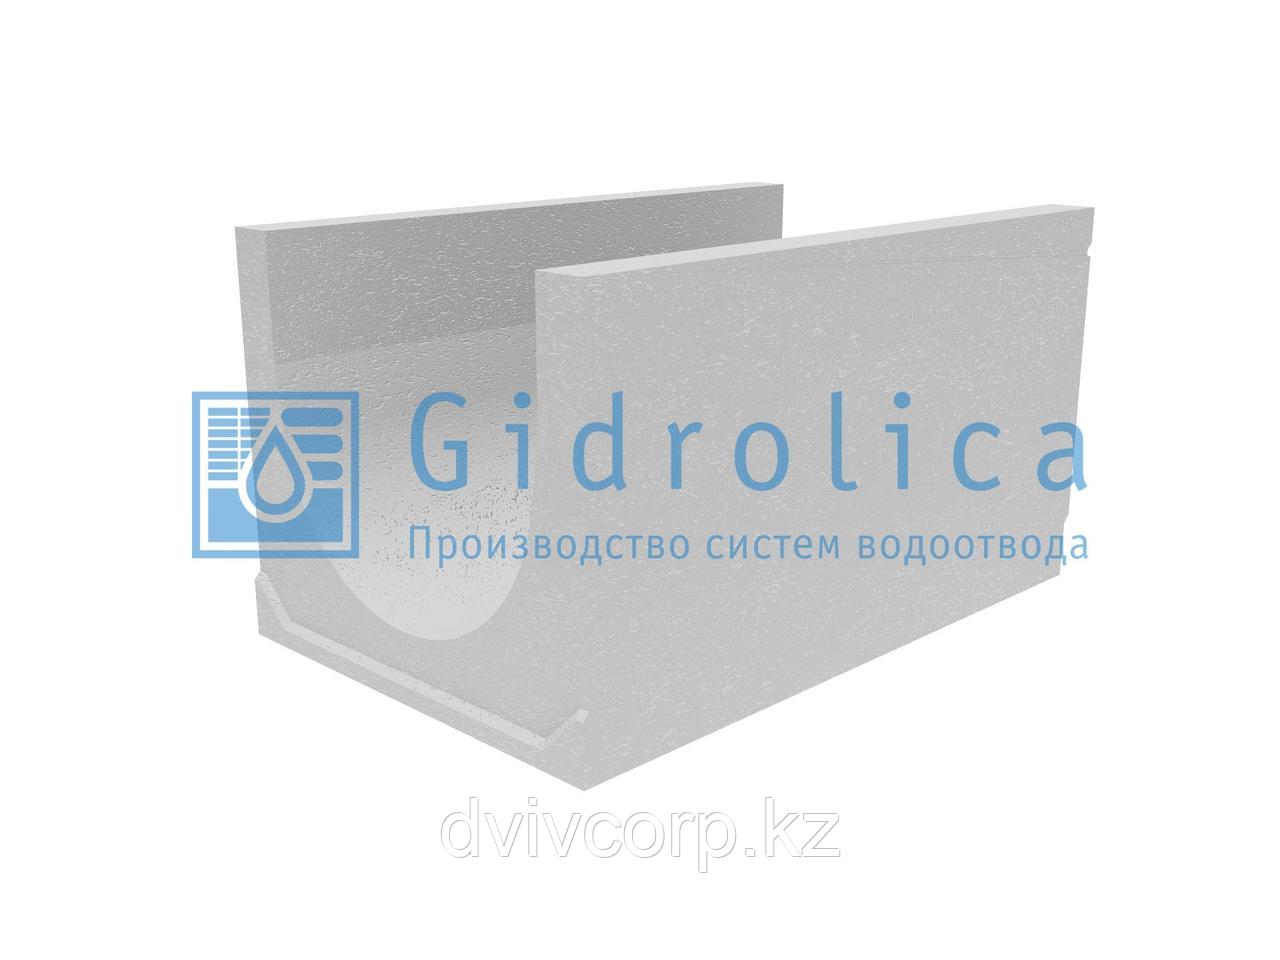 Лоток водоотводный бетонный коробчатый (СО-500мм), с уклоном 0,5%  КUу 100.65(50).55(46) - BGU-XL, № 20